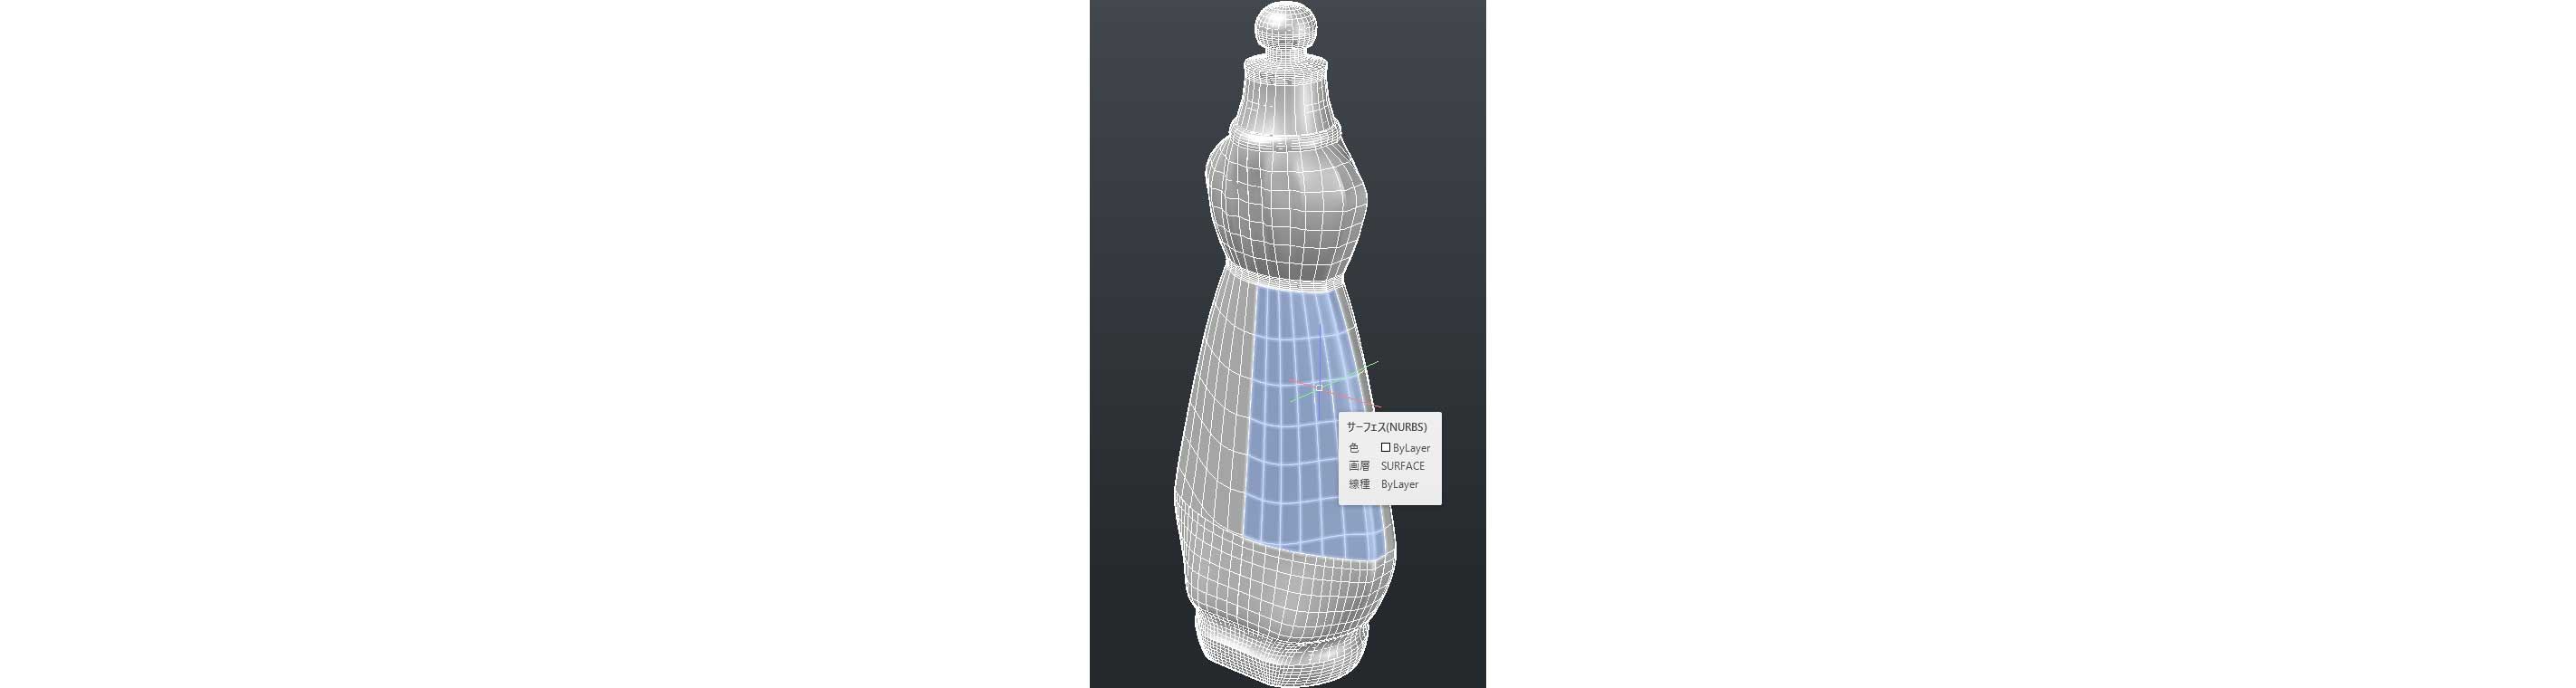 3D オブジェクト:サーフェスモデル